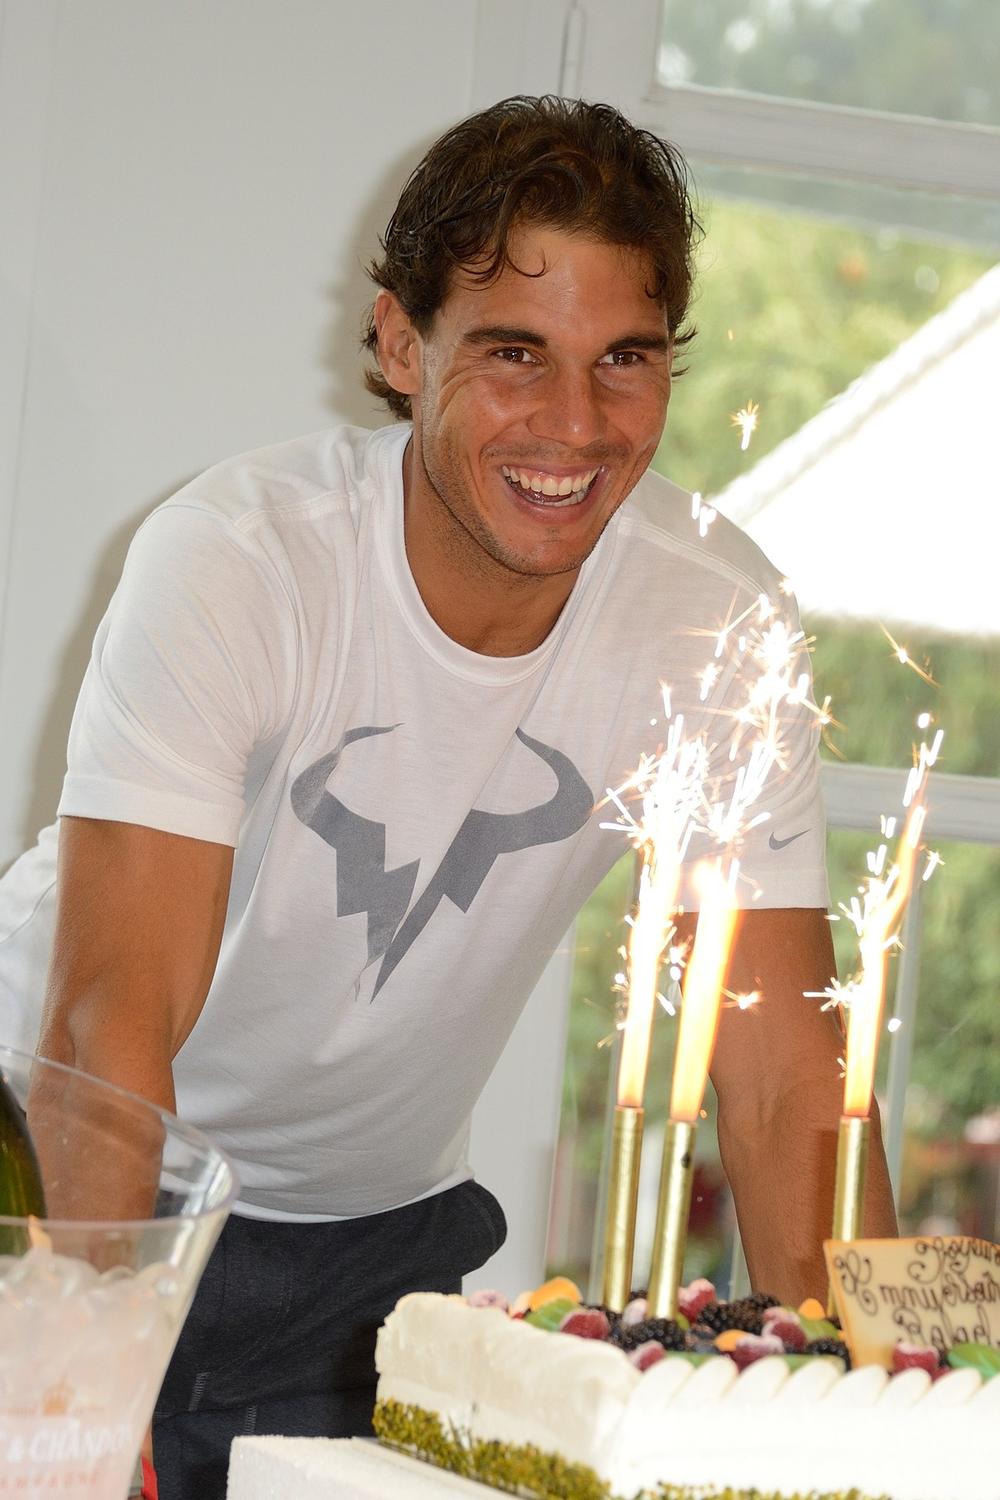 <p>Španski teniser <strong>Rafael Nadal </strong>3. juna proslavlja 31. rođendan. Poznat po izvanrednoj kondiciji, nije mu teško da održava kvalitet igre na zavidnom nivou i posle nekoliko sati borbe. Osim kao sjajan sportista, oprobao se i kao model rame uz rame sa <strong>Megan</strong> <strong>Foks </strong>u Armanijevom donjem rublju. Mladi <strong>Rafa </strong>čini se već ima sve. On uživa ogromnu popularnost, bogatstvo i sreću, a sve to zahvaljujući napornom trudu i radu.</p>